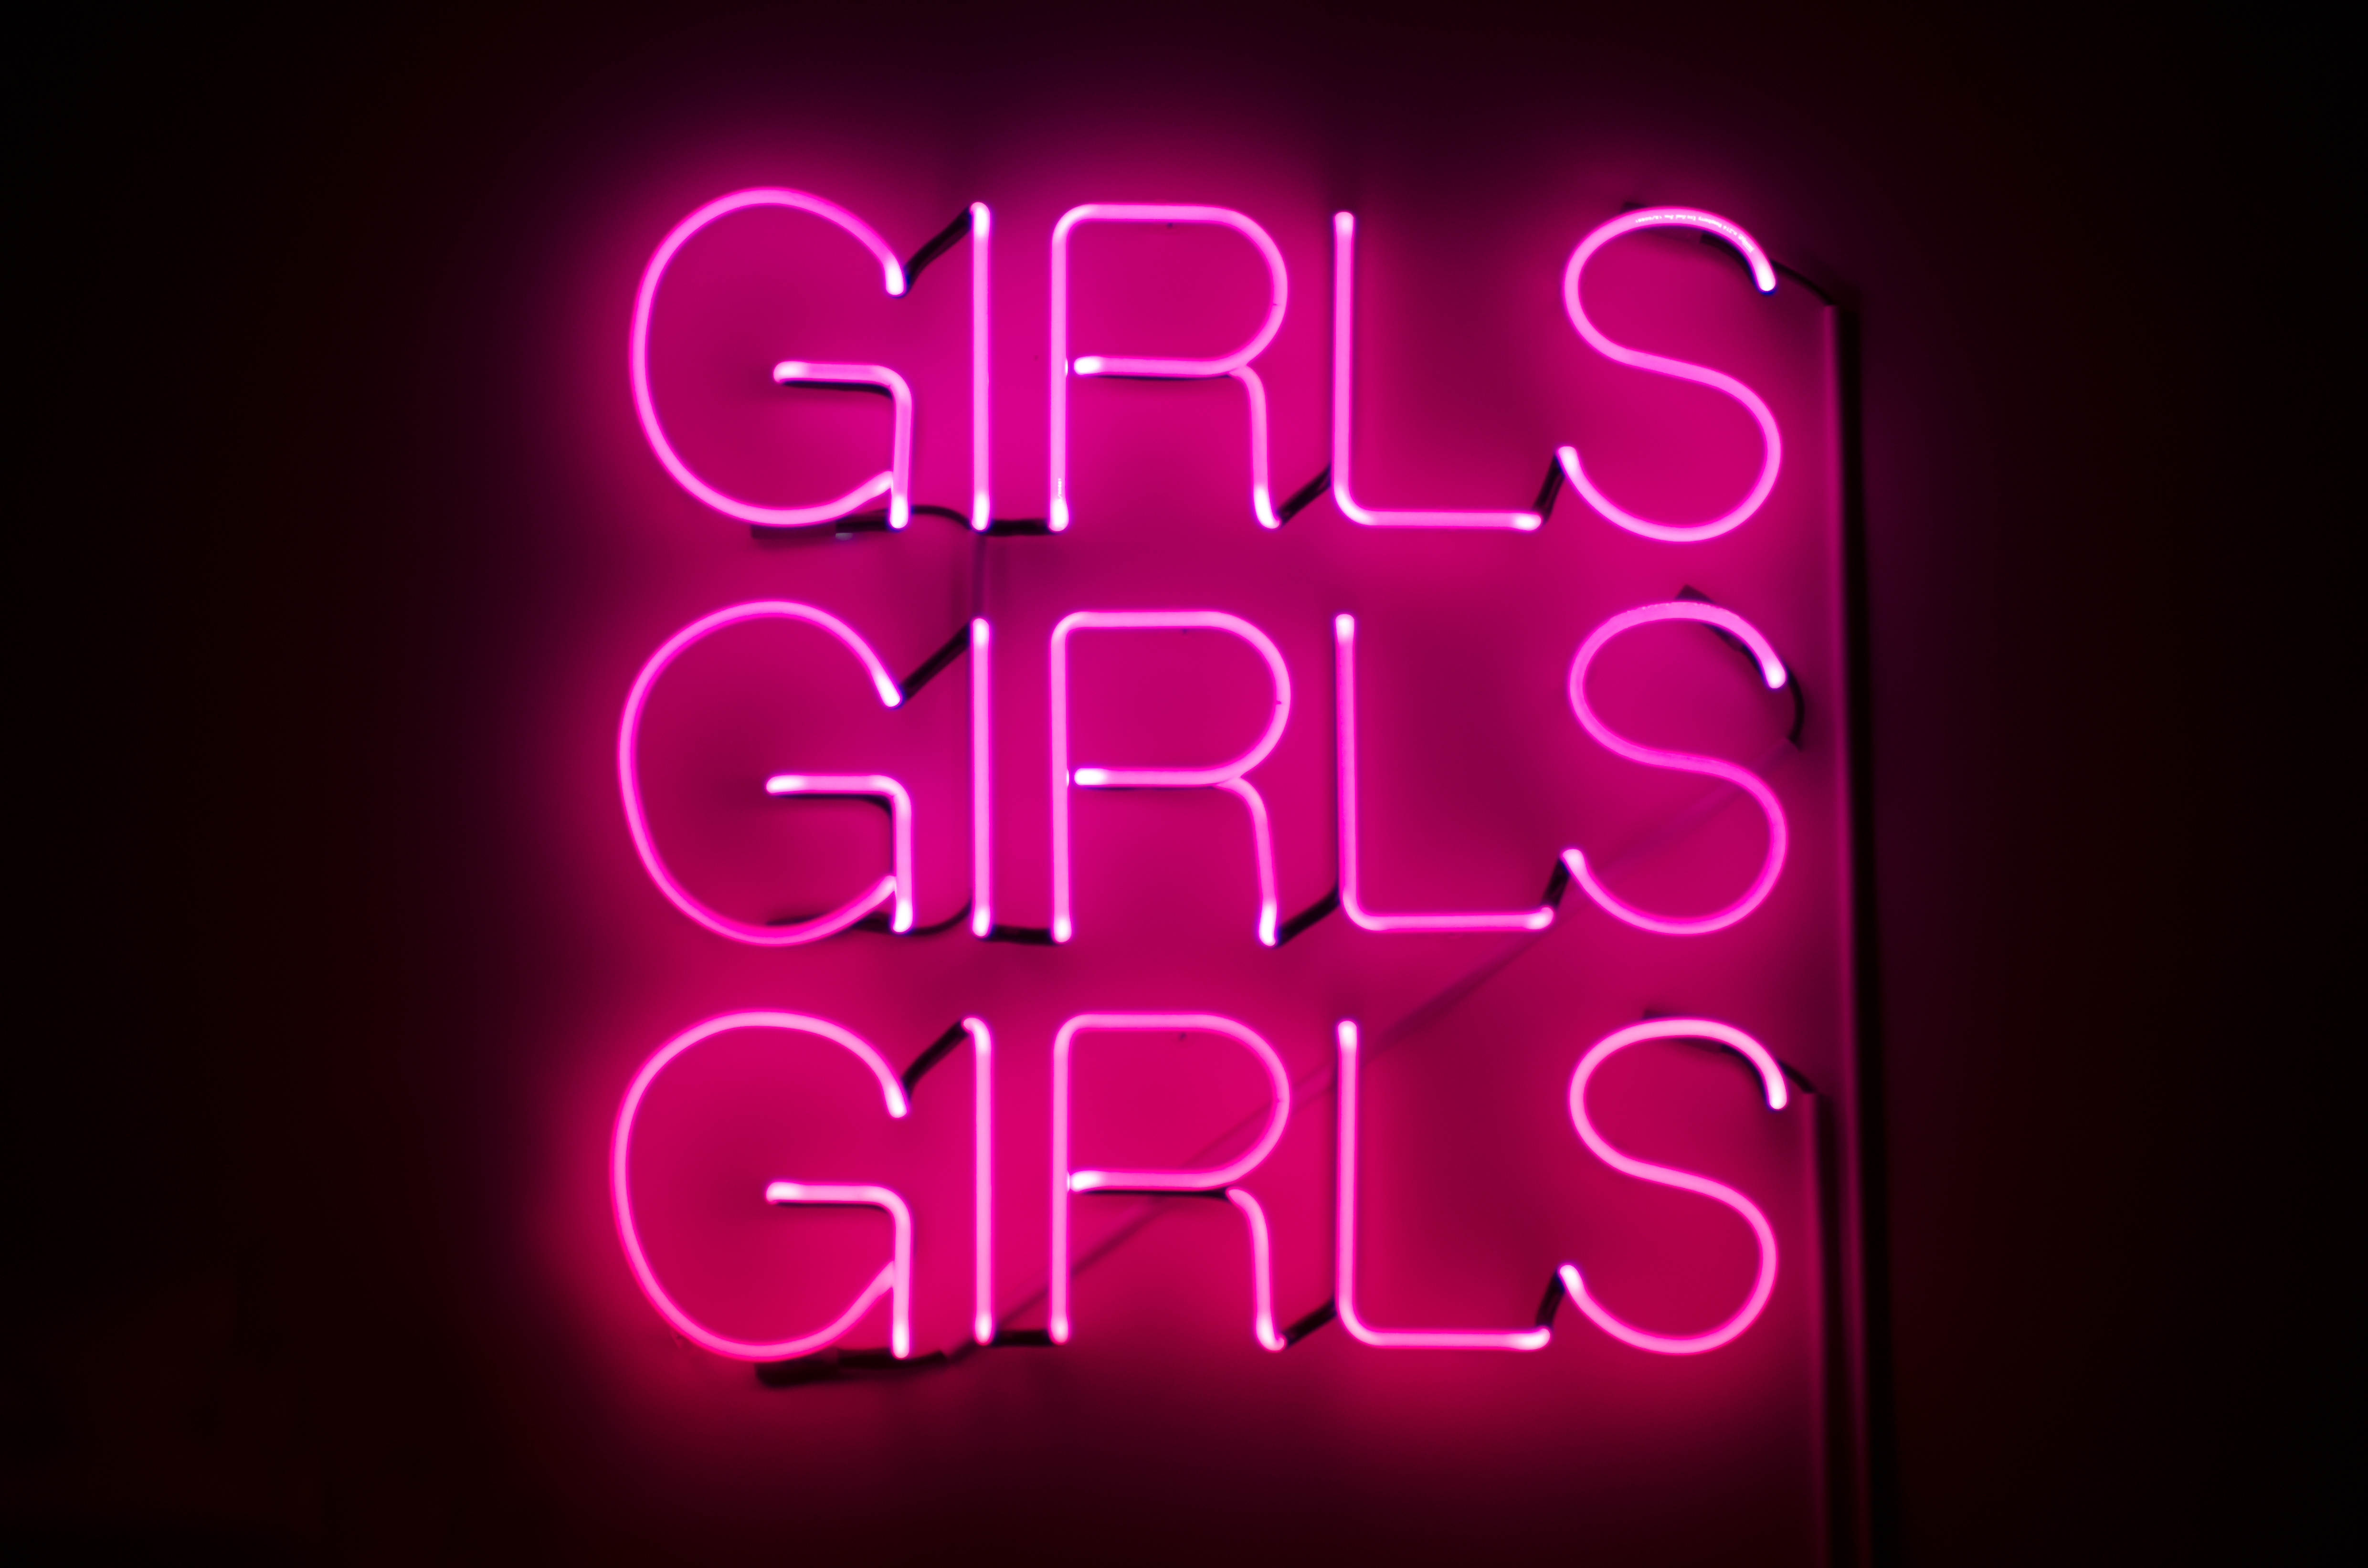 Girls Girls Girls sign glows in racy pink neon against dark night background